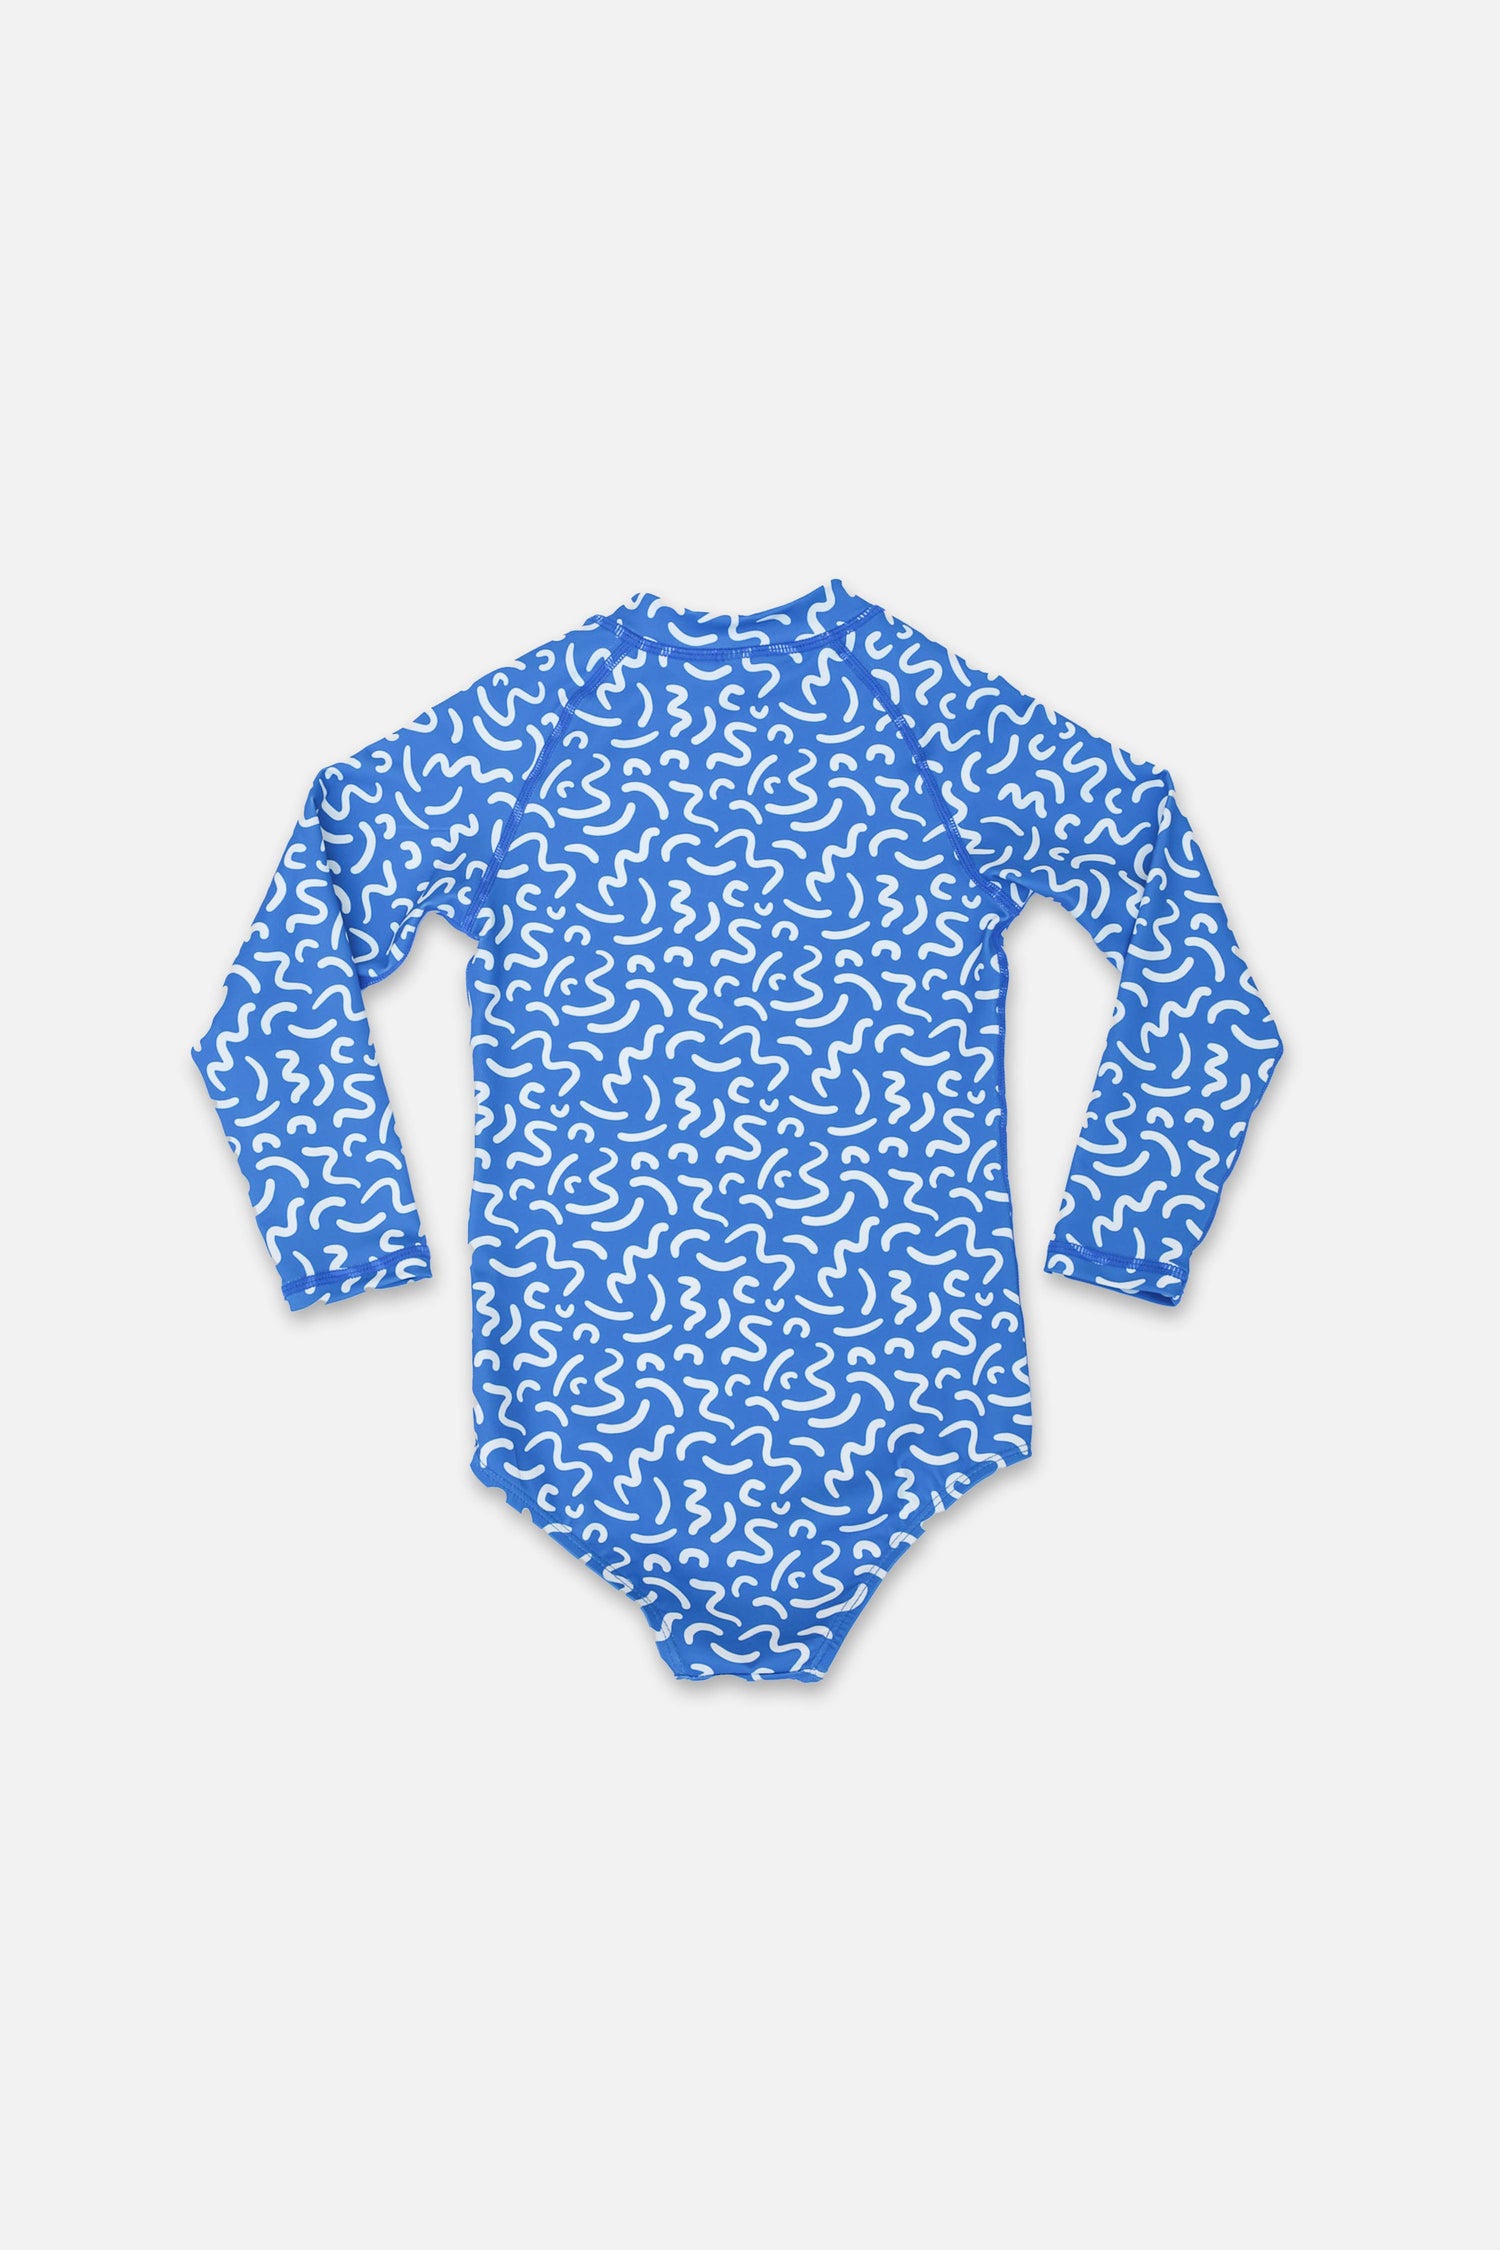 Girl UV Swimsuit - Ocean Vibes